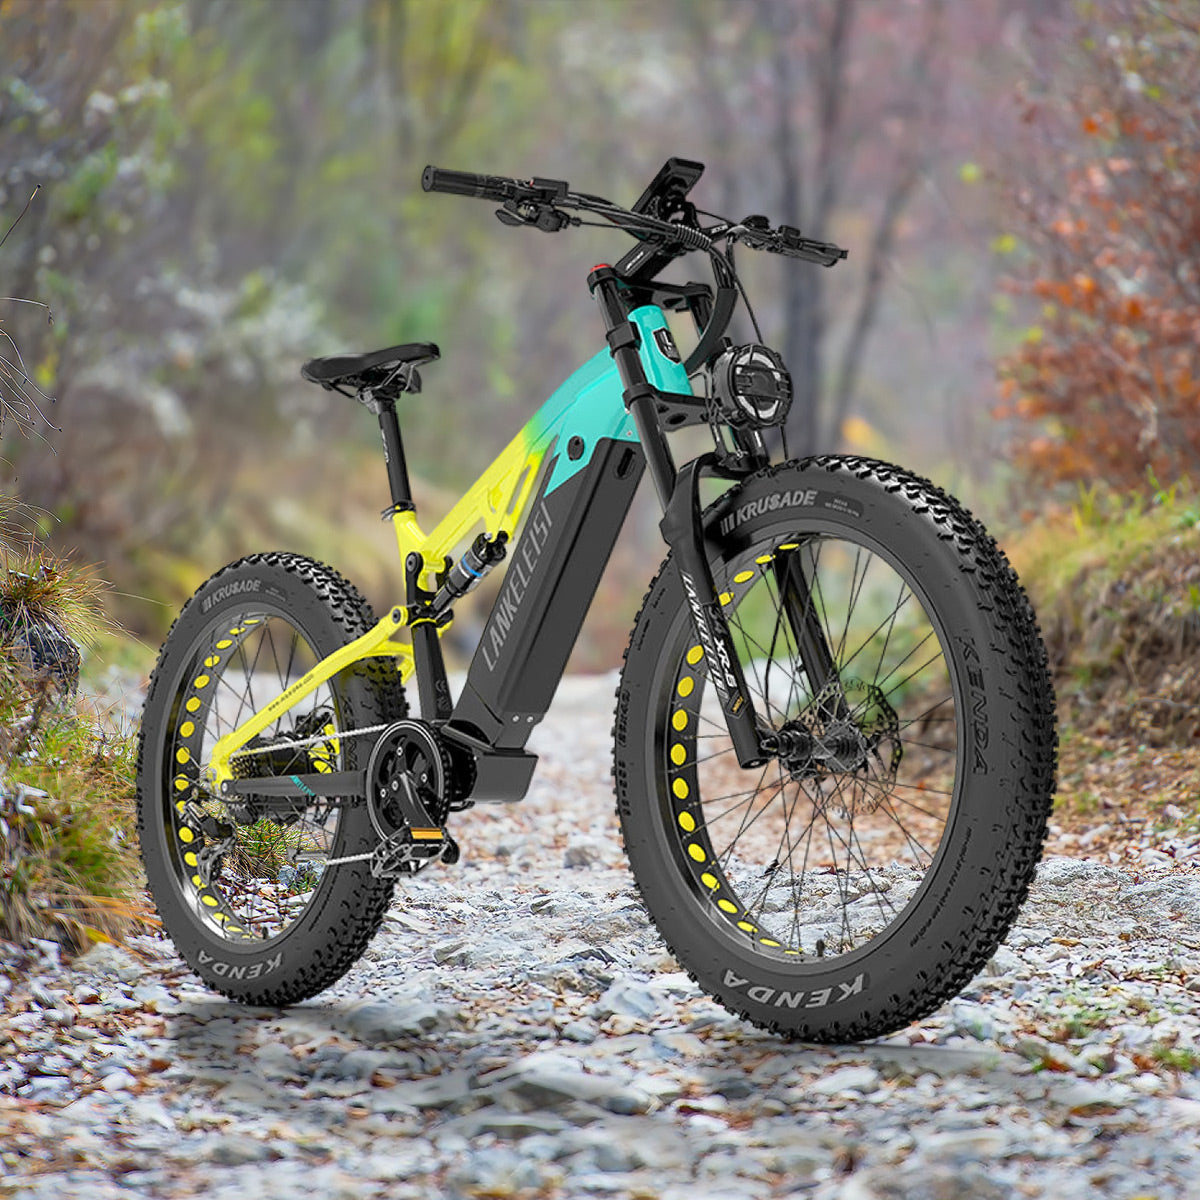 Lankeleisi RV800 Plus 750W Bafang Motor 26" Fat Bike Bicicleta de Montaña Eléctrica con Suspensión Total 20Ah Batería Samsung E-MTB